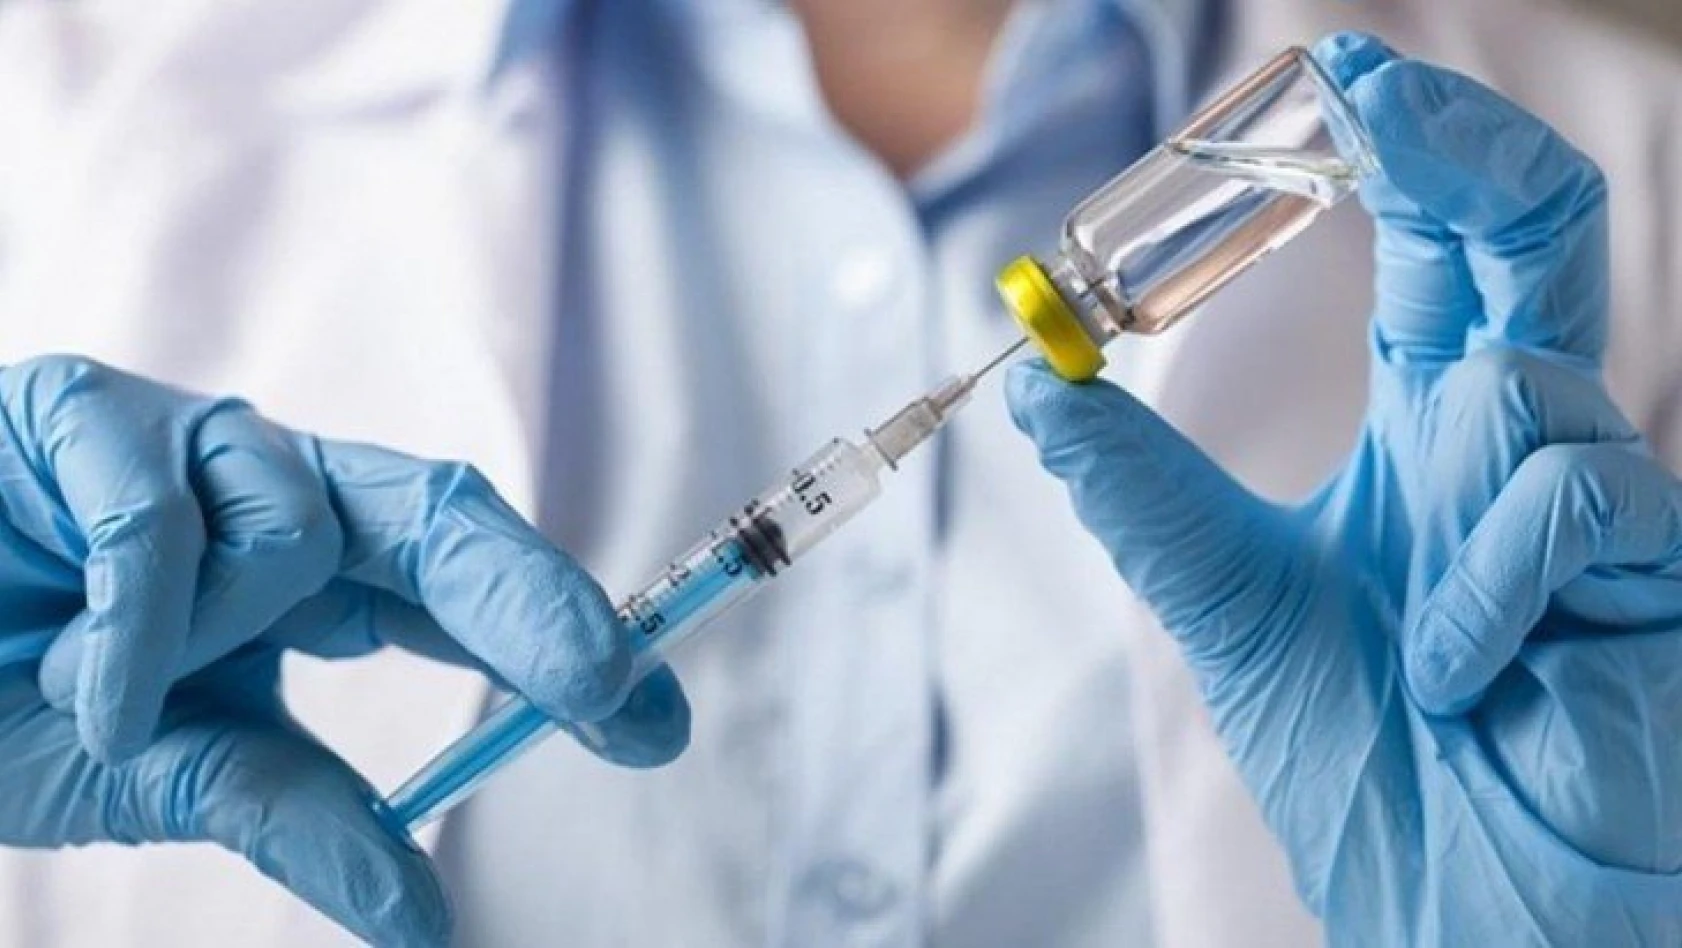 Sağlık Bakanlığı'ndan yeni aşı kararları